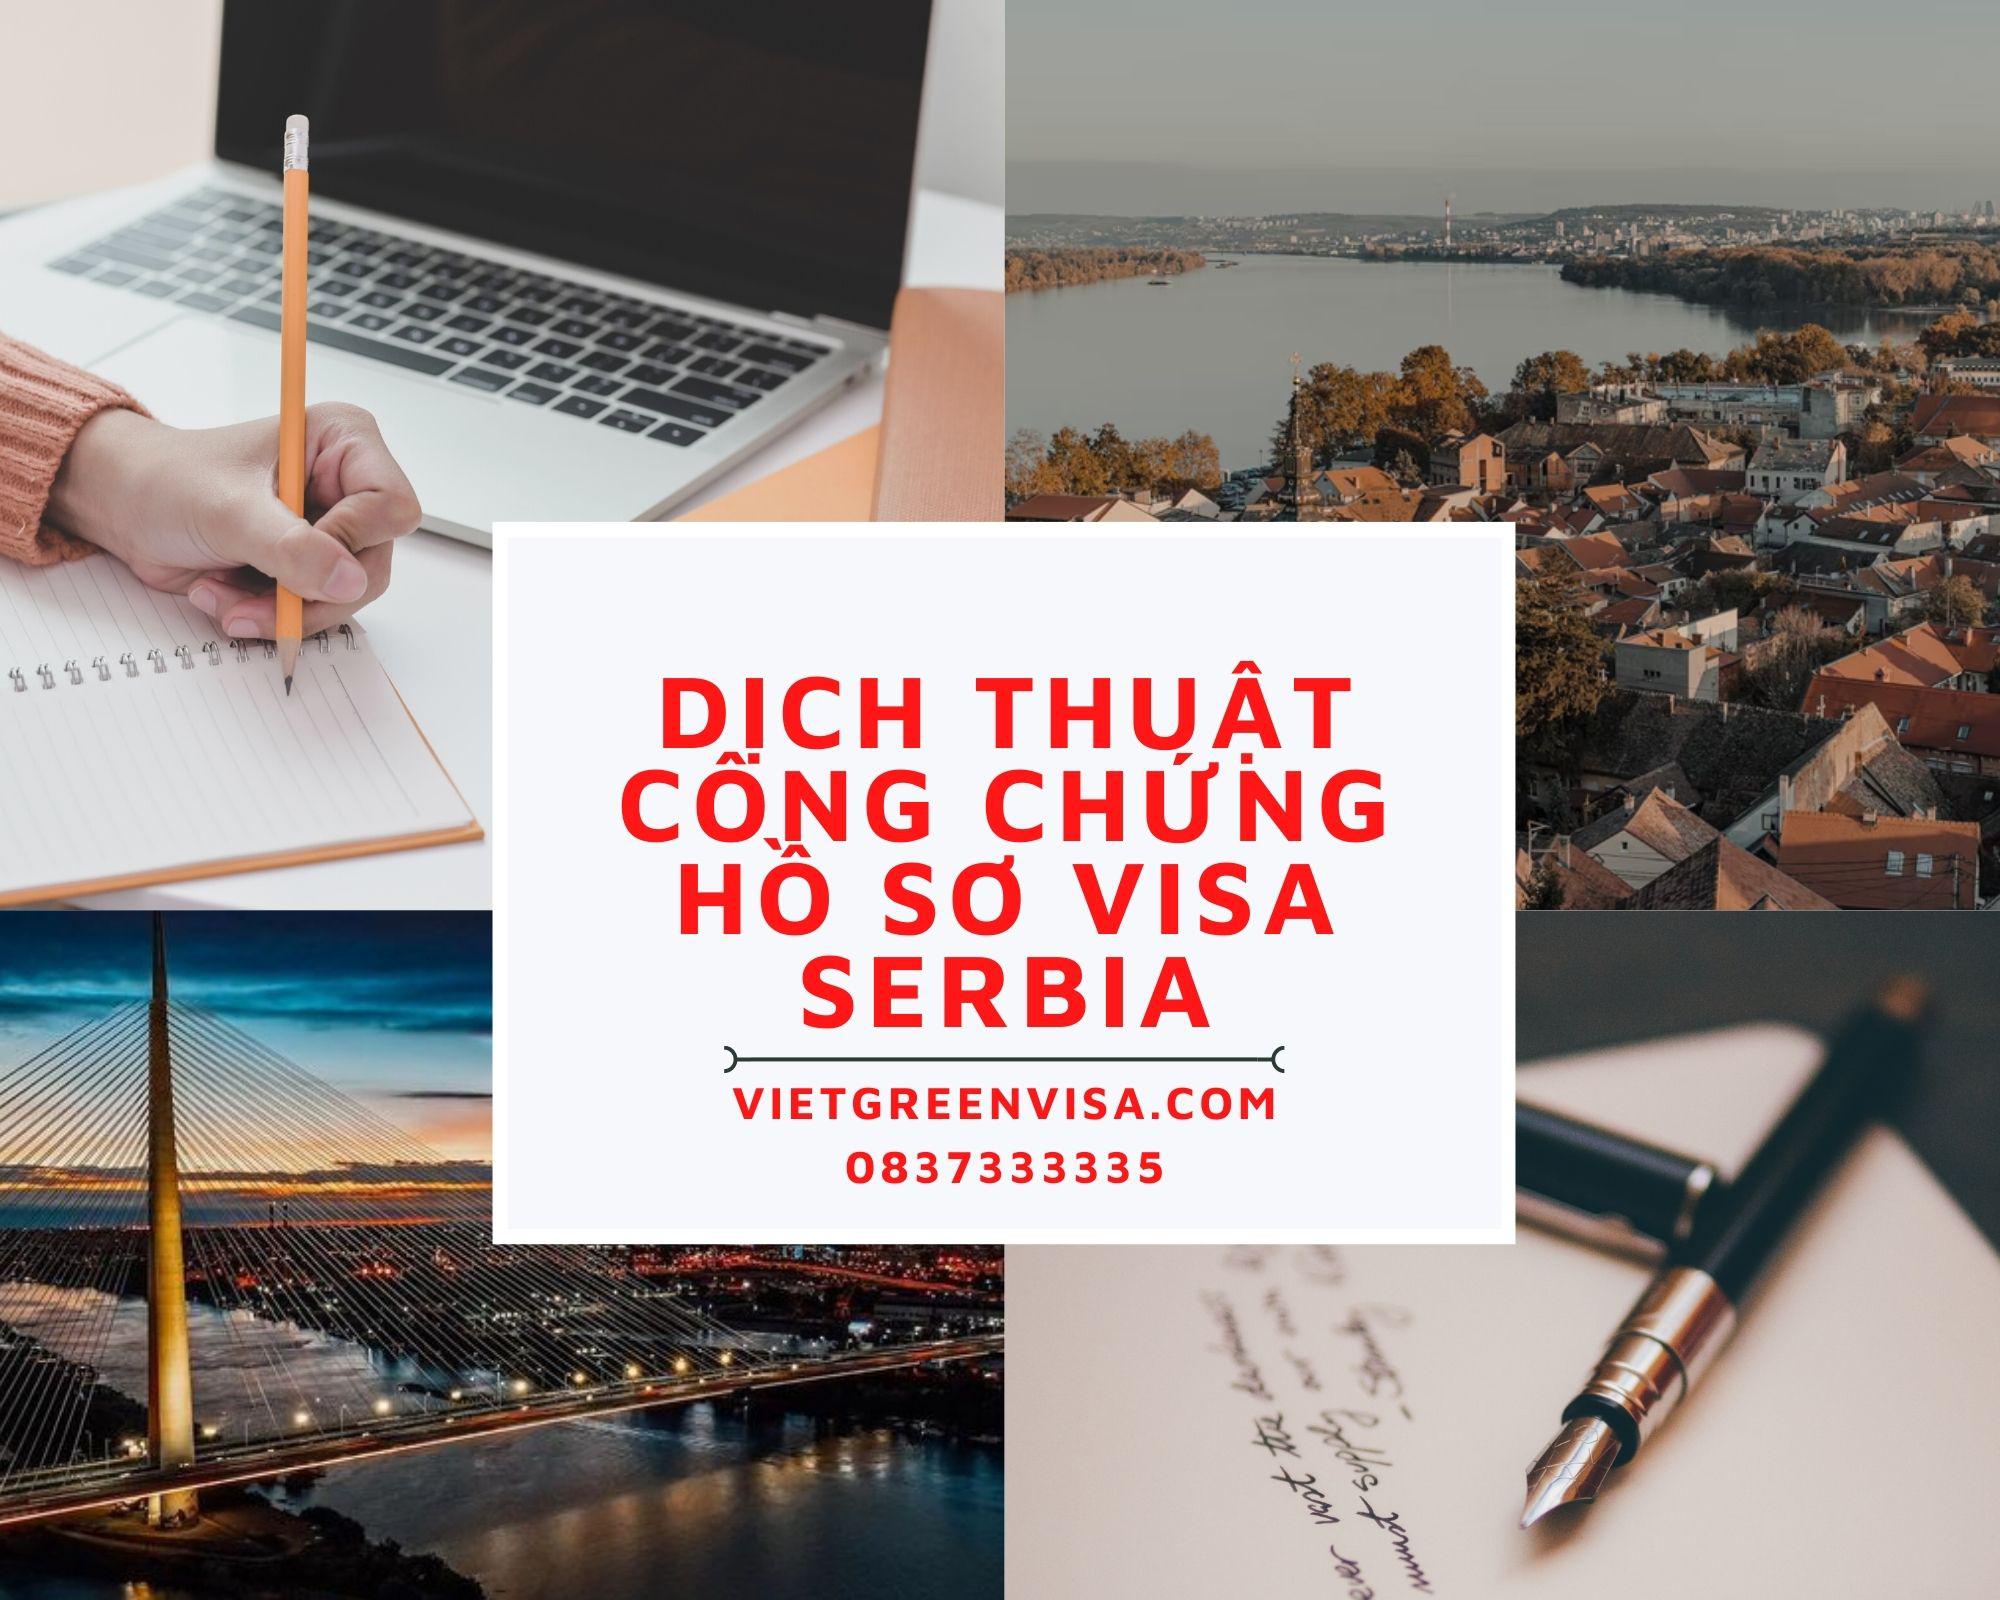 Dịch thuật công chứng hồ sơ visa du lịch, du học Serbia nhanh rẻ